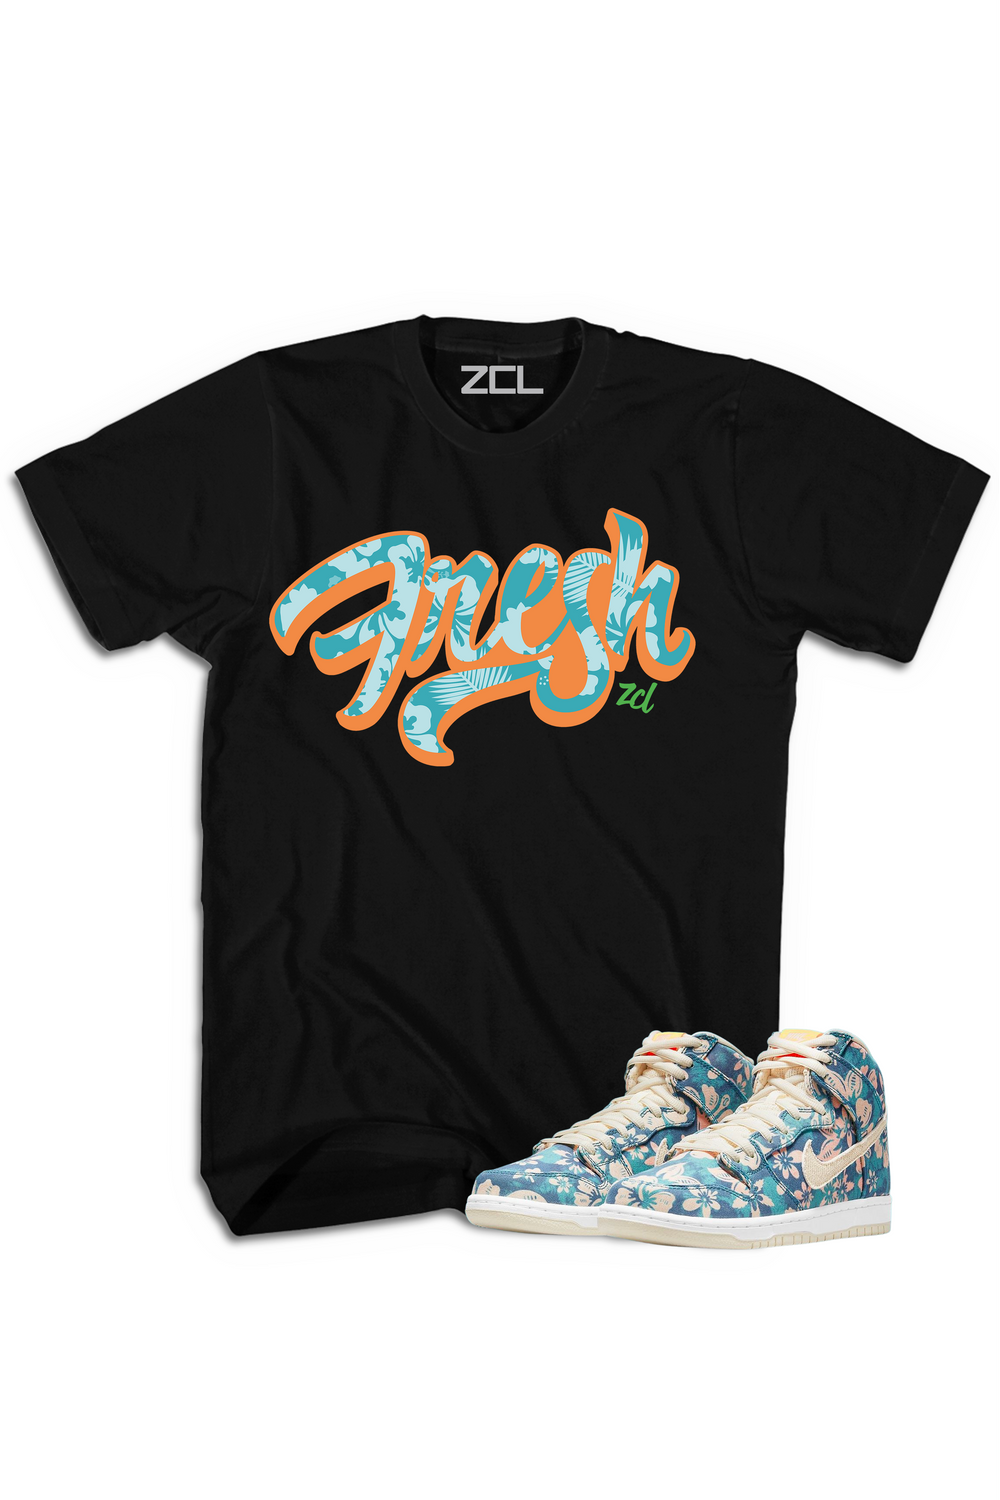 Nike SB Dunk High "Fresh" Tee Hawaii - Zamage